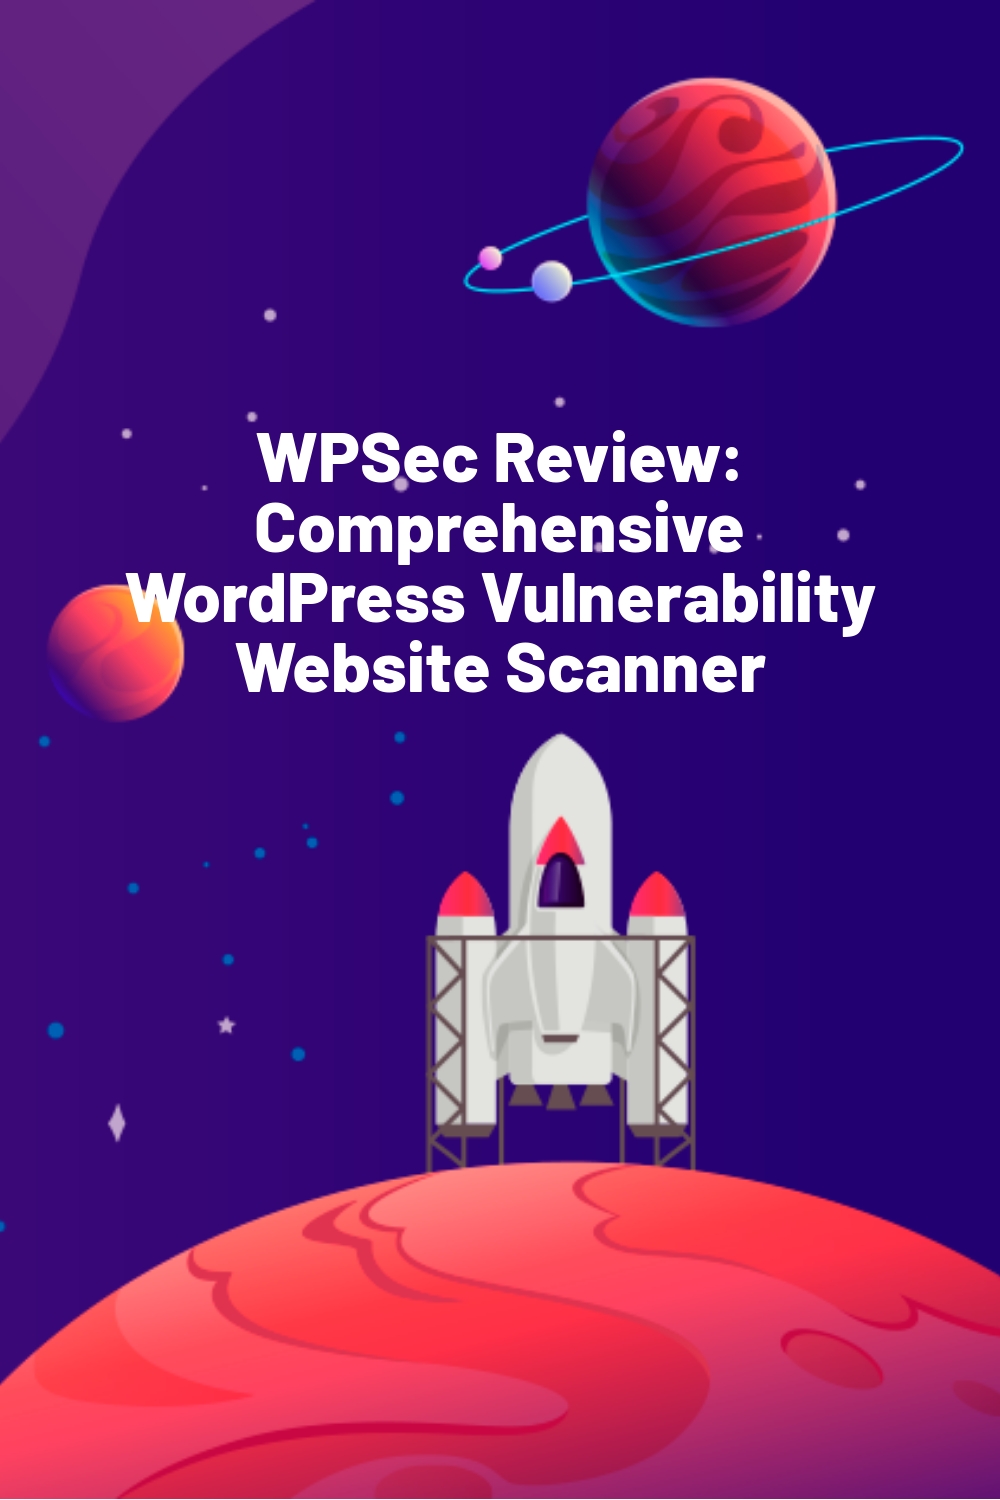 WPSec Review: Comprehensive WordPress Vulnerability Website Scanner